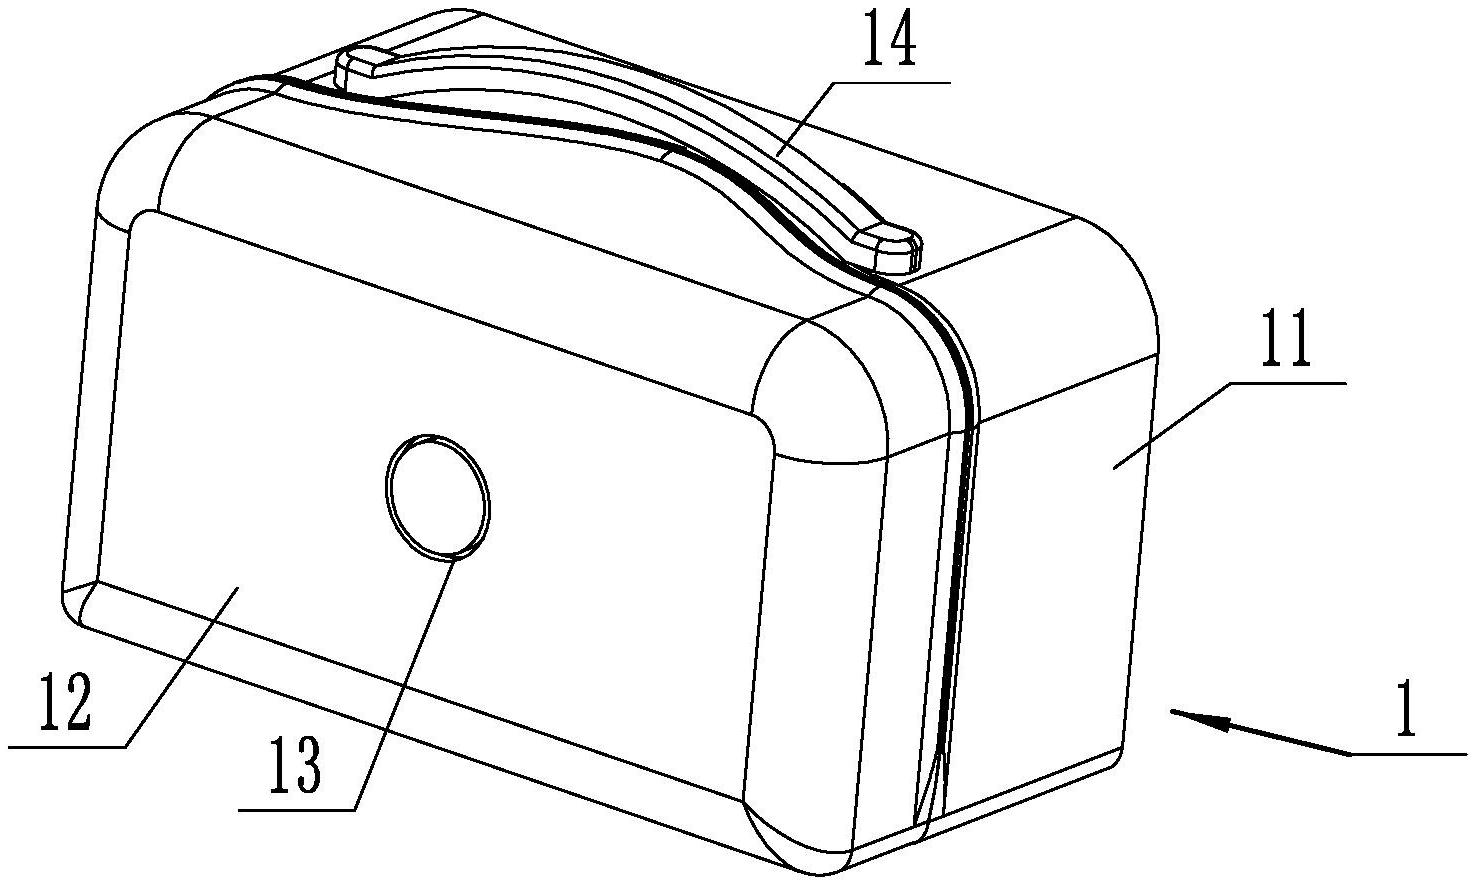 一种多功能便携式娱乐盒专利图